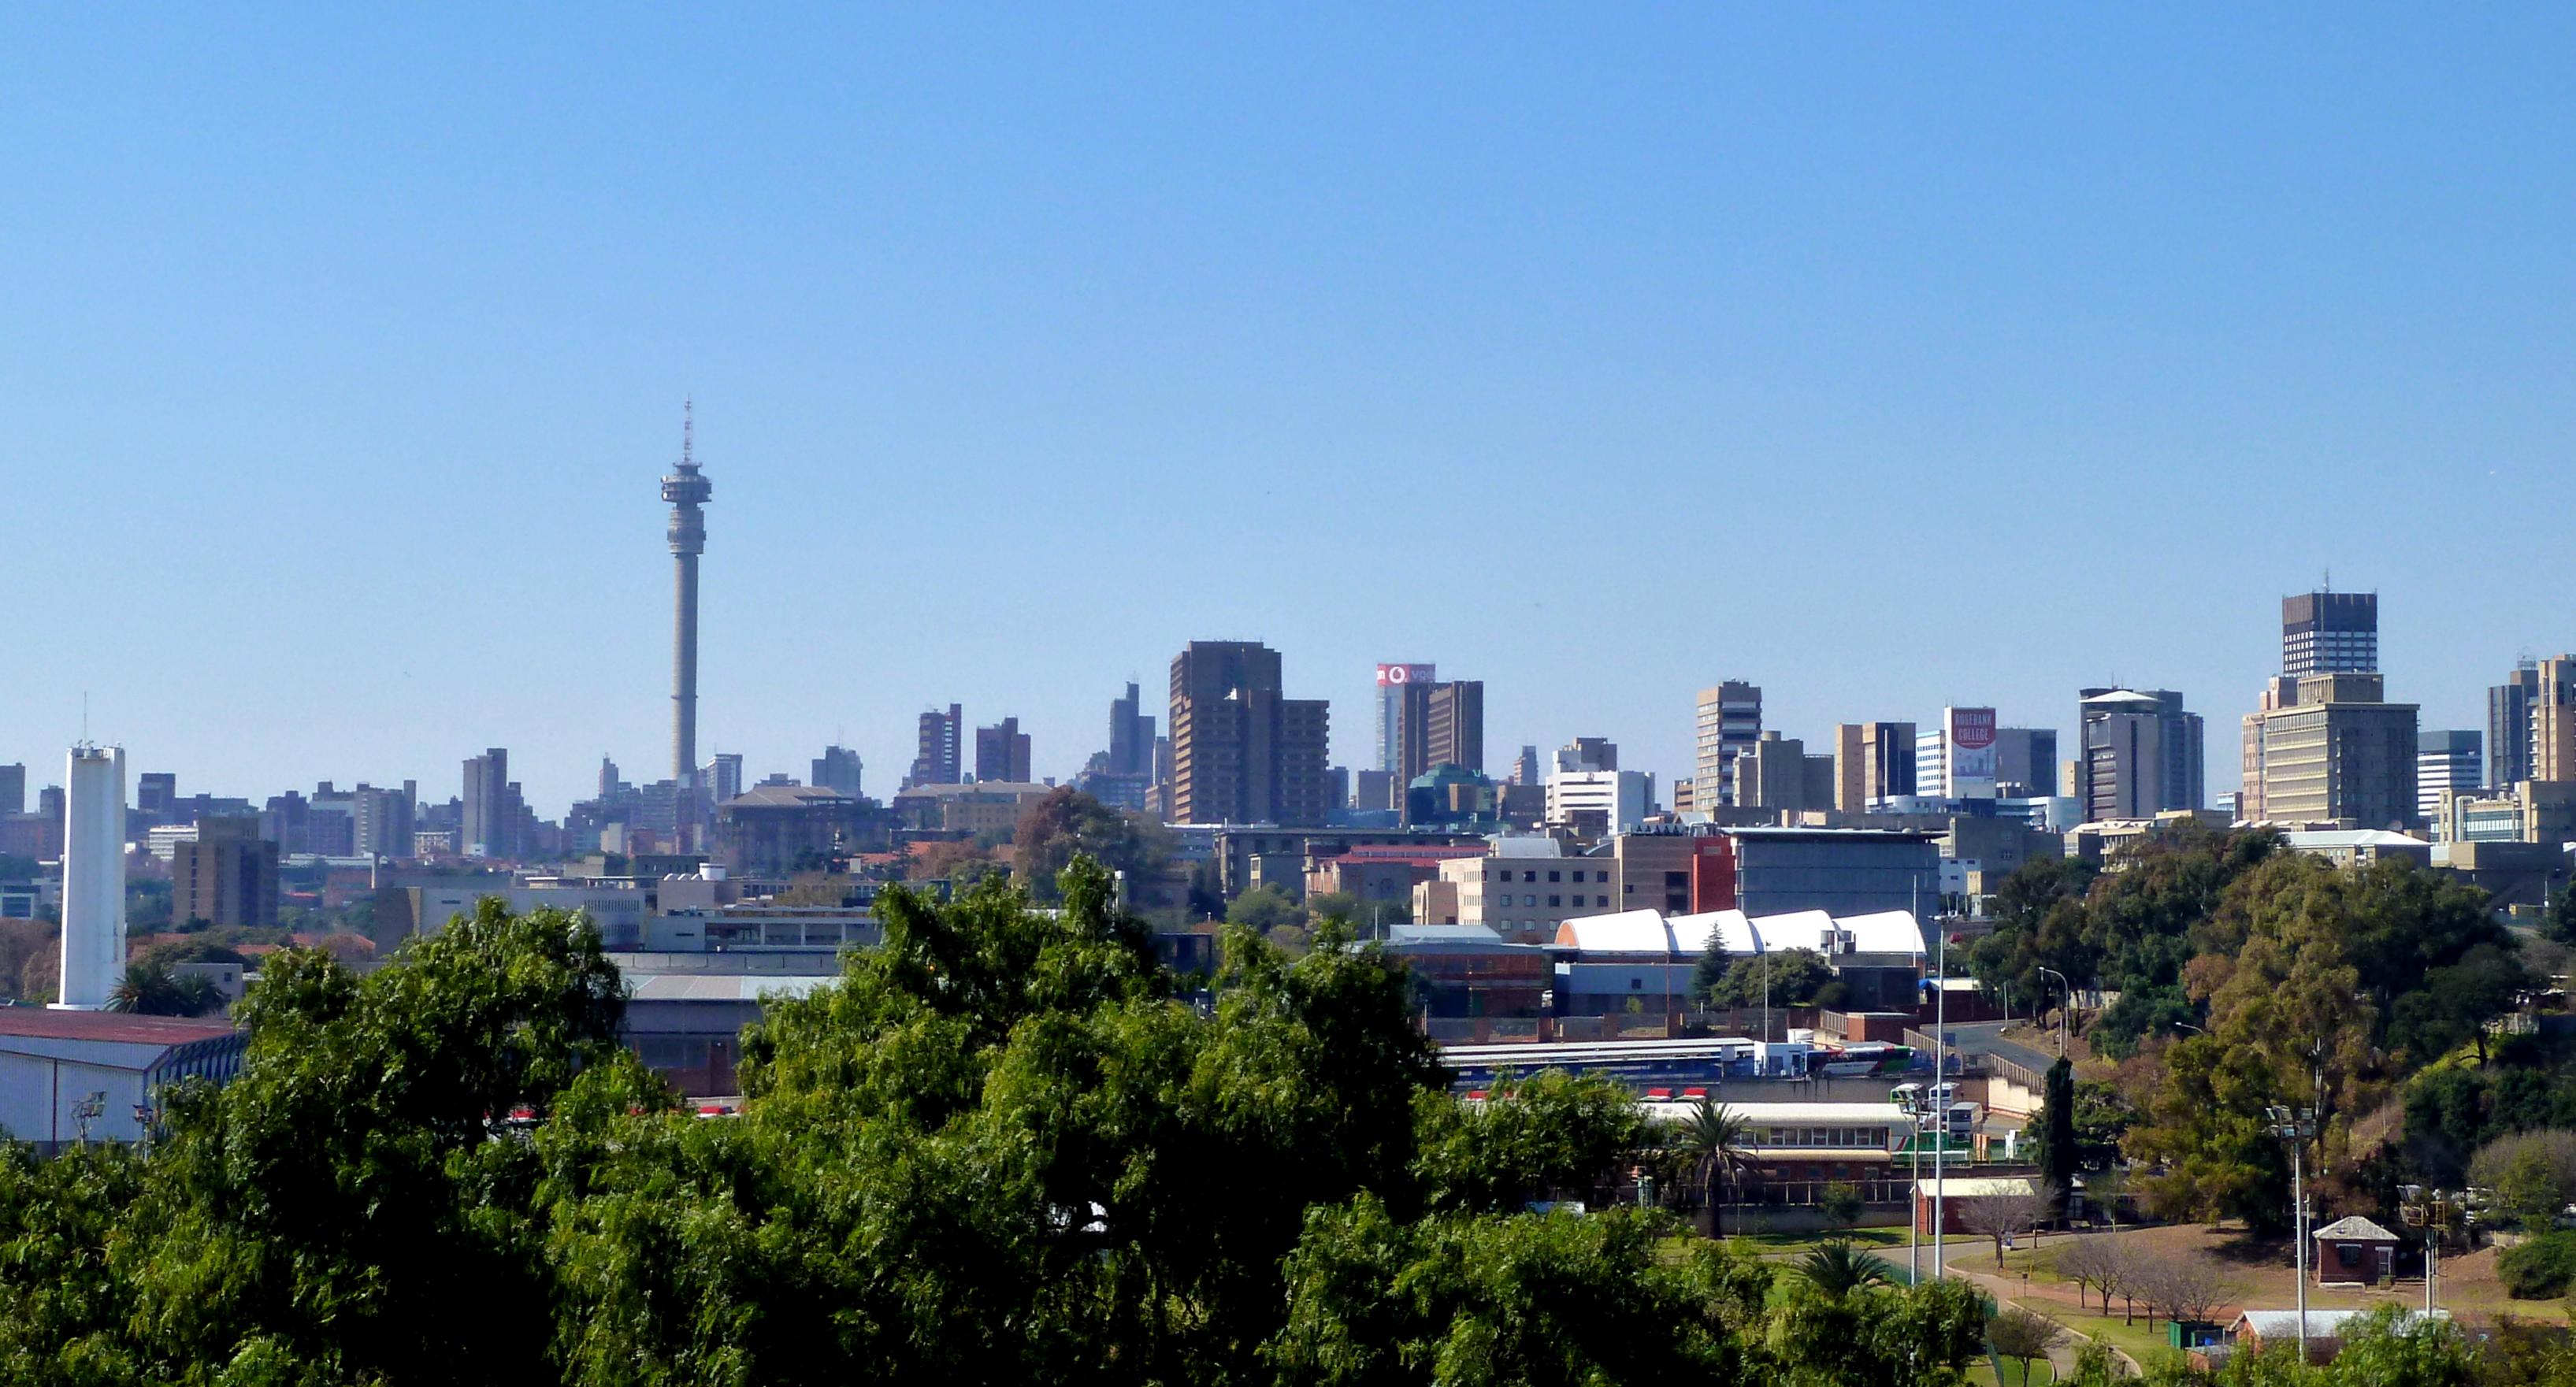 Ein Blick auf die Hochhäuser, die die Skyline der südafrikanischen Wirtschaftsmetropole Johannesburg prägen.